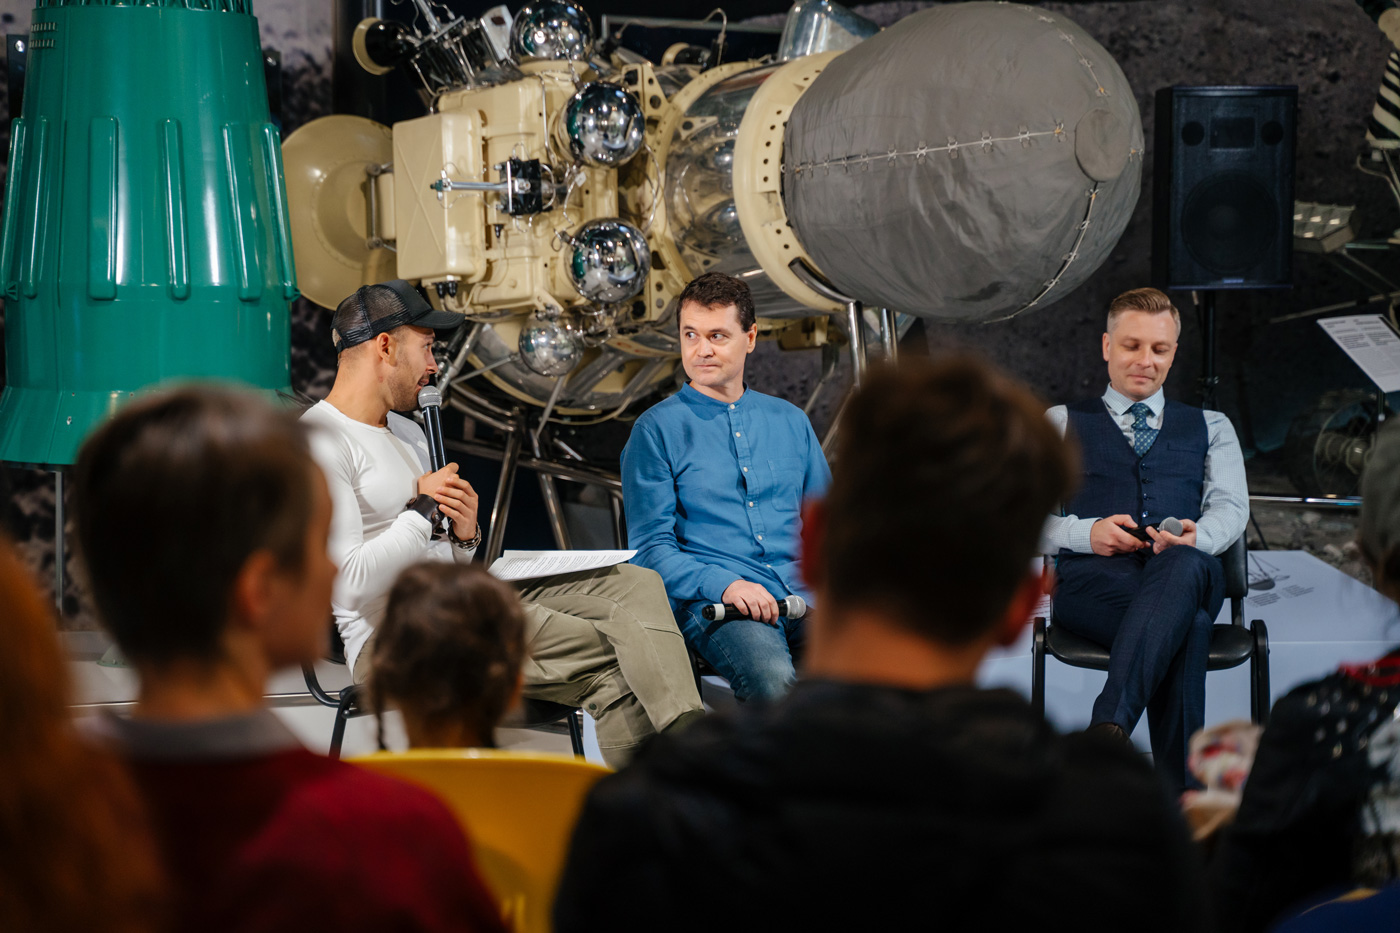 Николай Дубинин, Шамиль Идиатуллин и Дмитрий Захаров в Музее космонавтики. Фотограф: Руслан Альтимиров